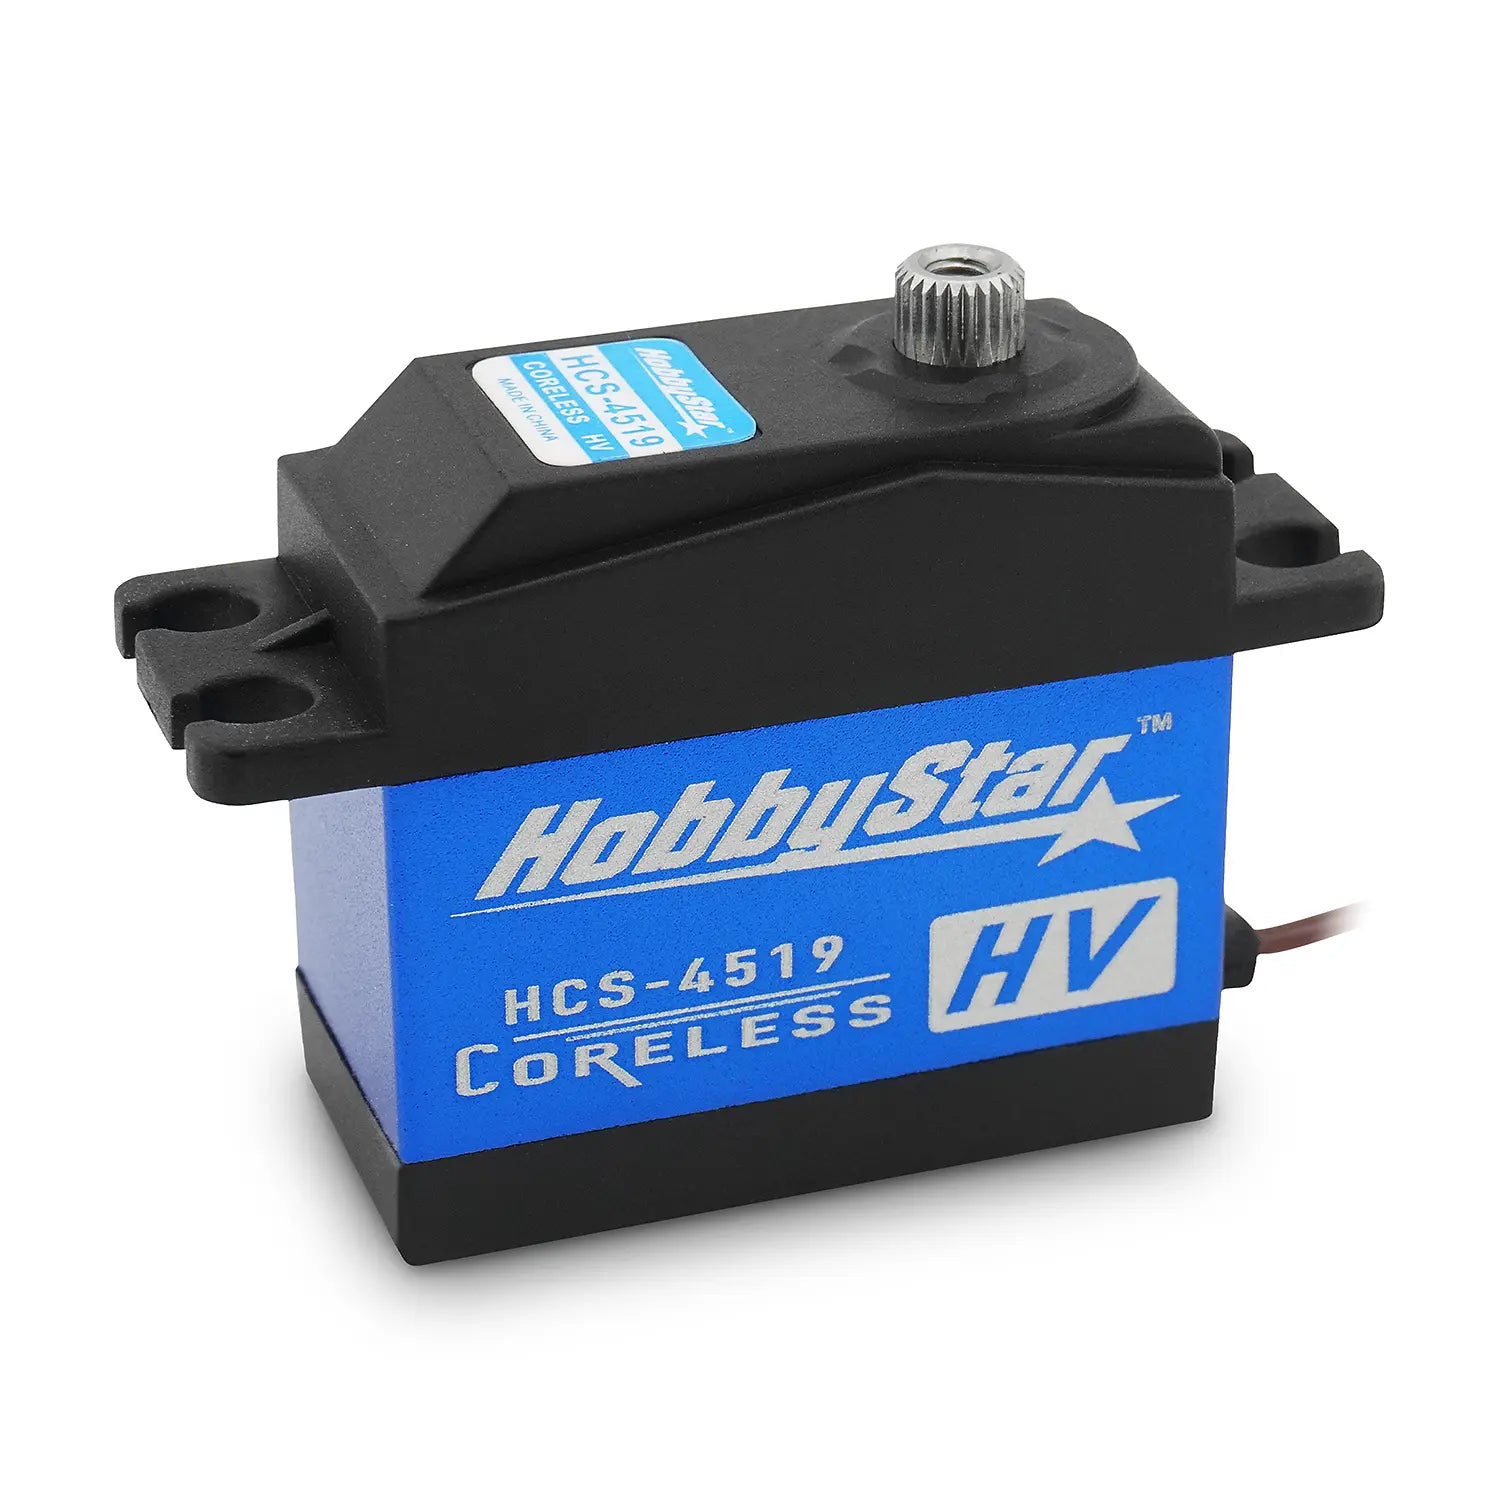 HobbyStar HCS-4519 High-Speed, High-Torque Digital Servo